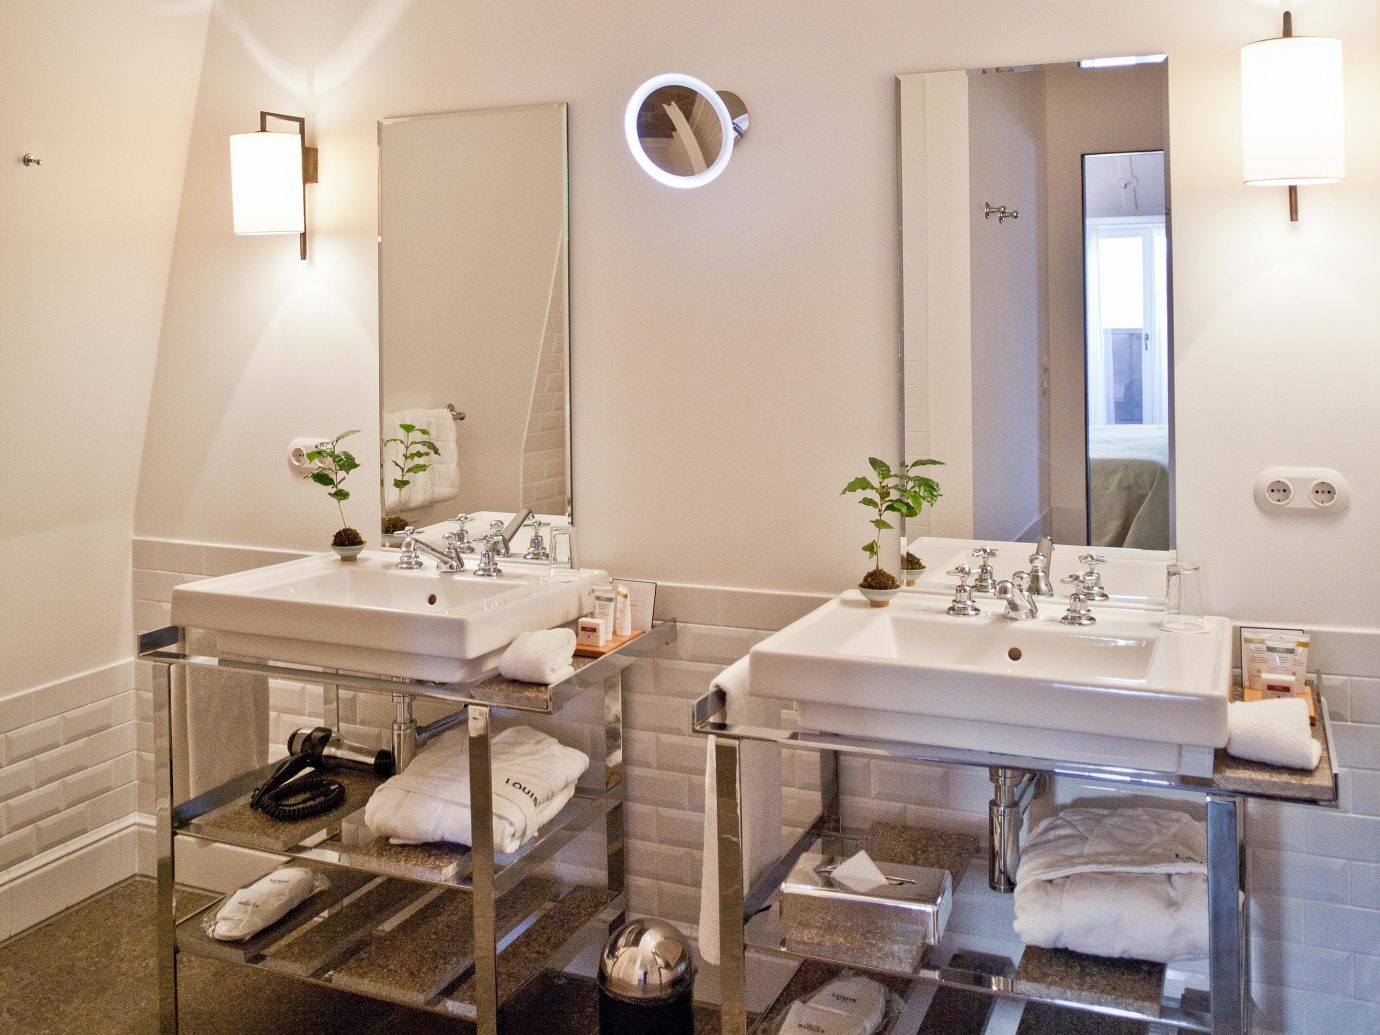 europe Germany Hotels Munich wall bathroom indoor room sink home interior design real estate tap plumbing fixture floor Suite